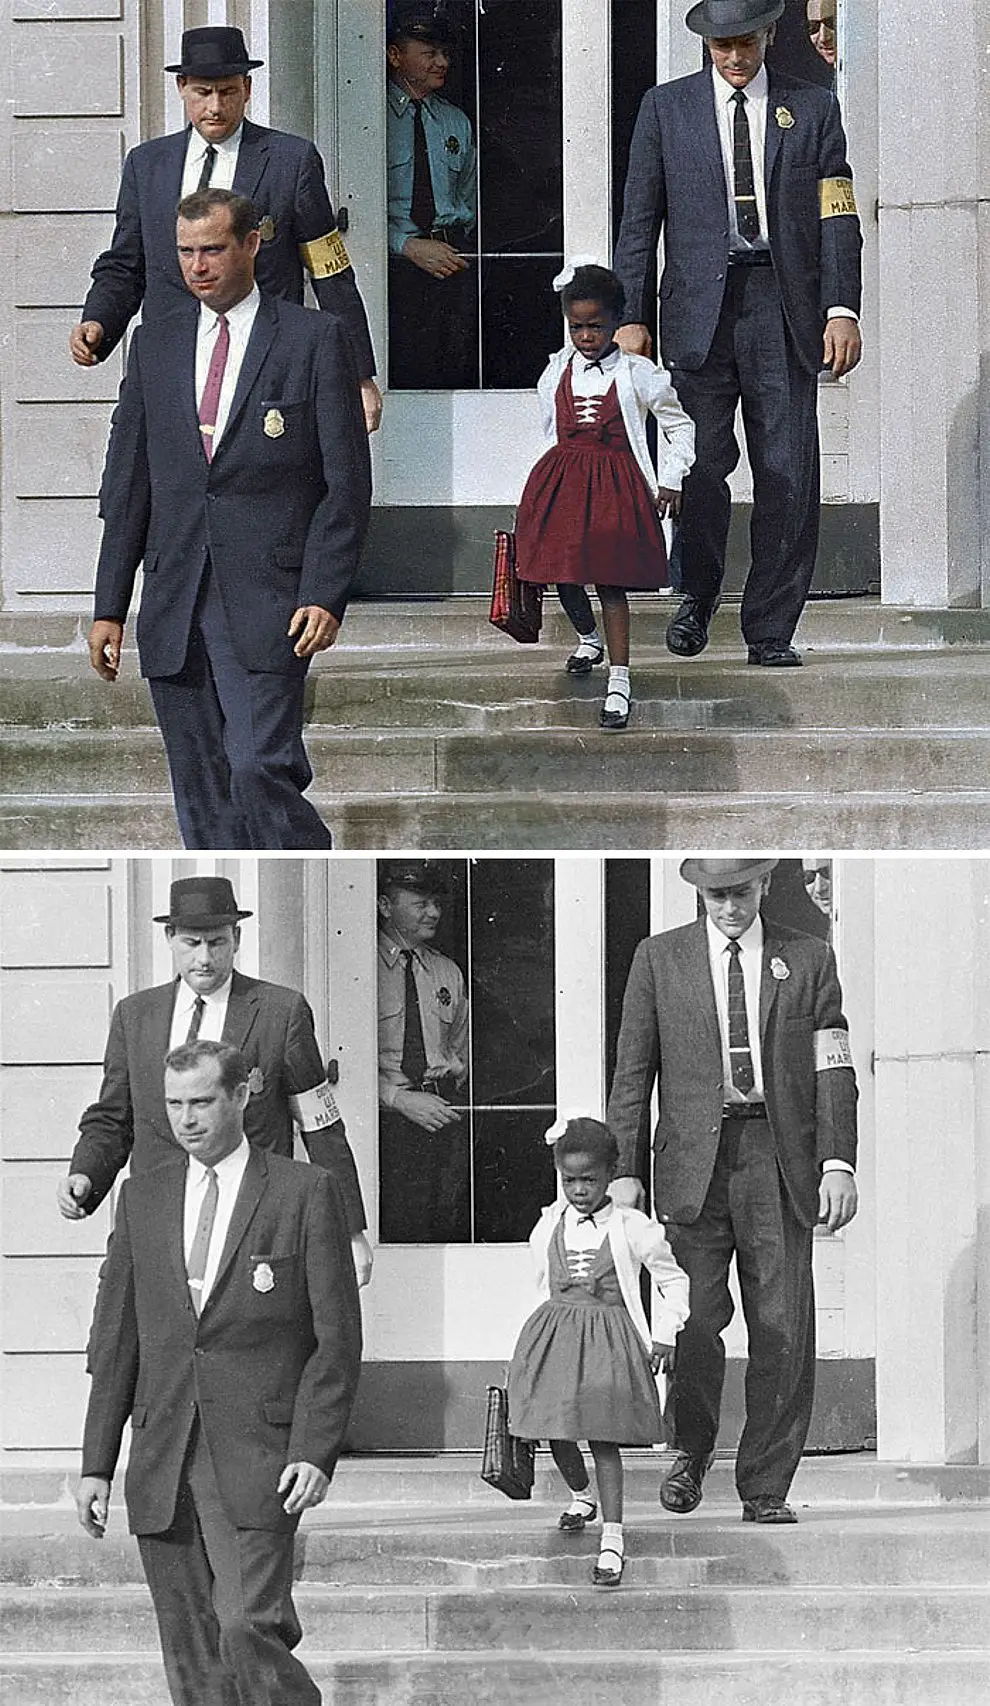 4. Руби Бриджес в сопровождении маршалов США во время посещения школы для белых, 1960 год